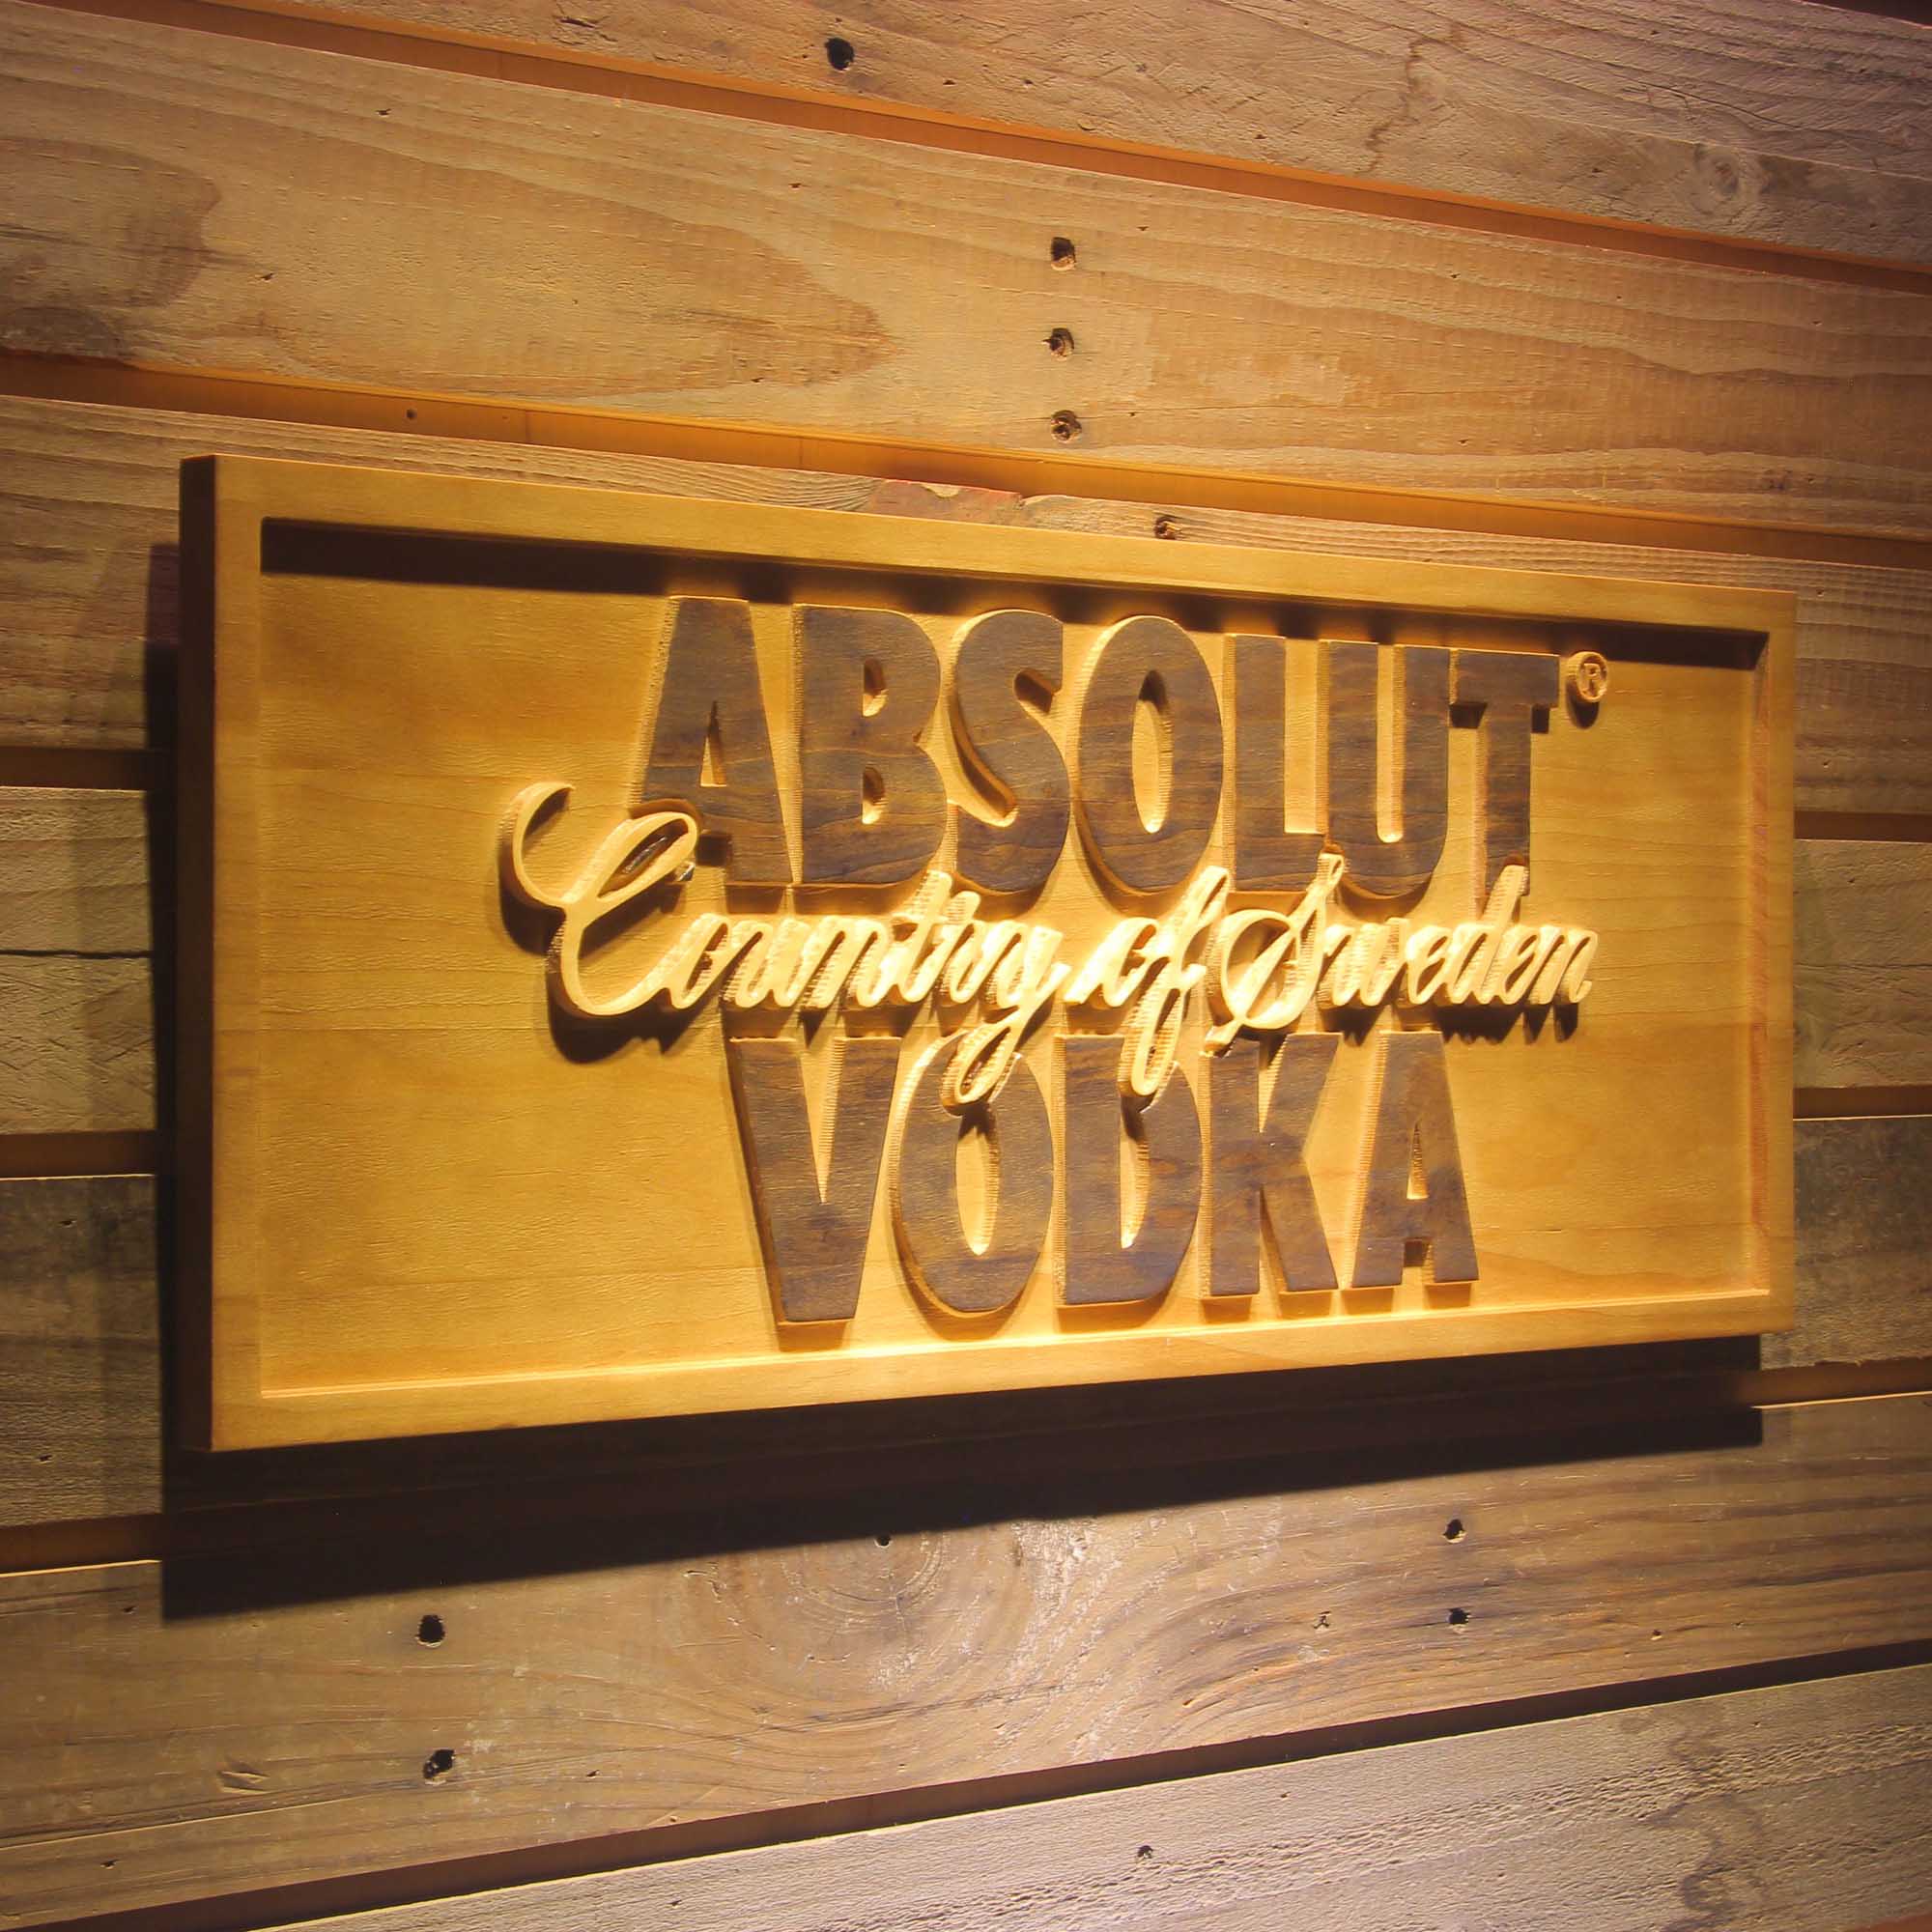 Absolut Vodka 3D Wooden Engrave Sign